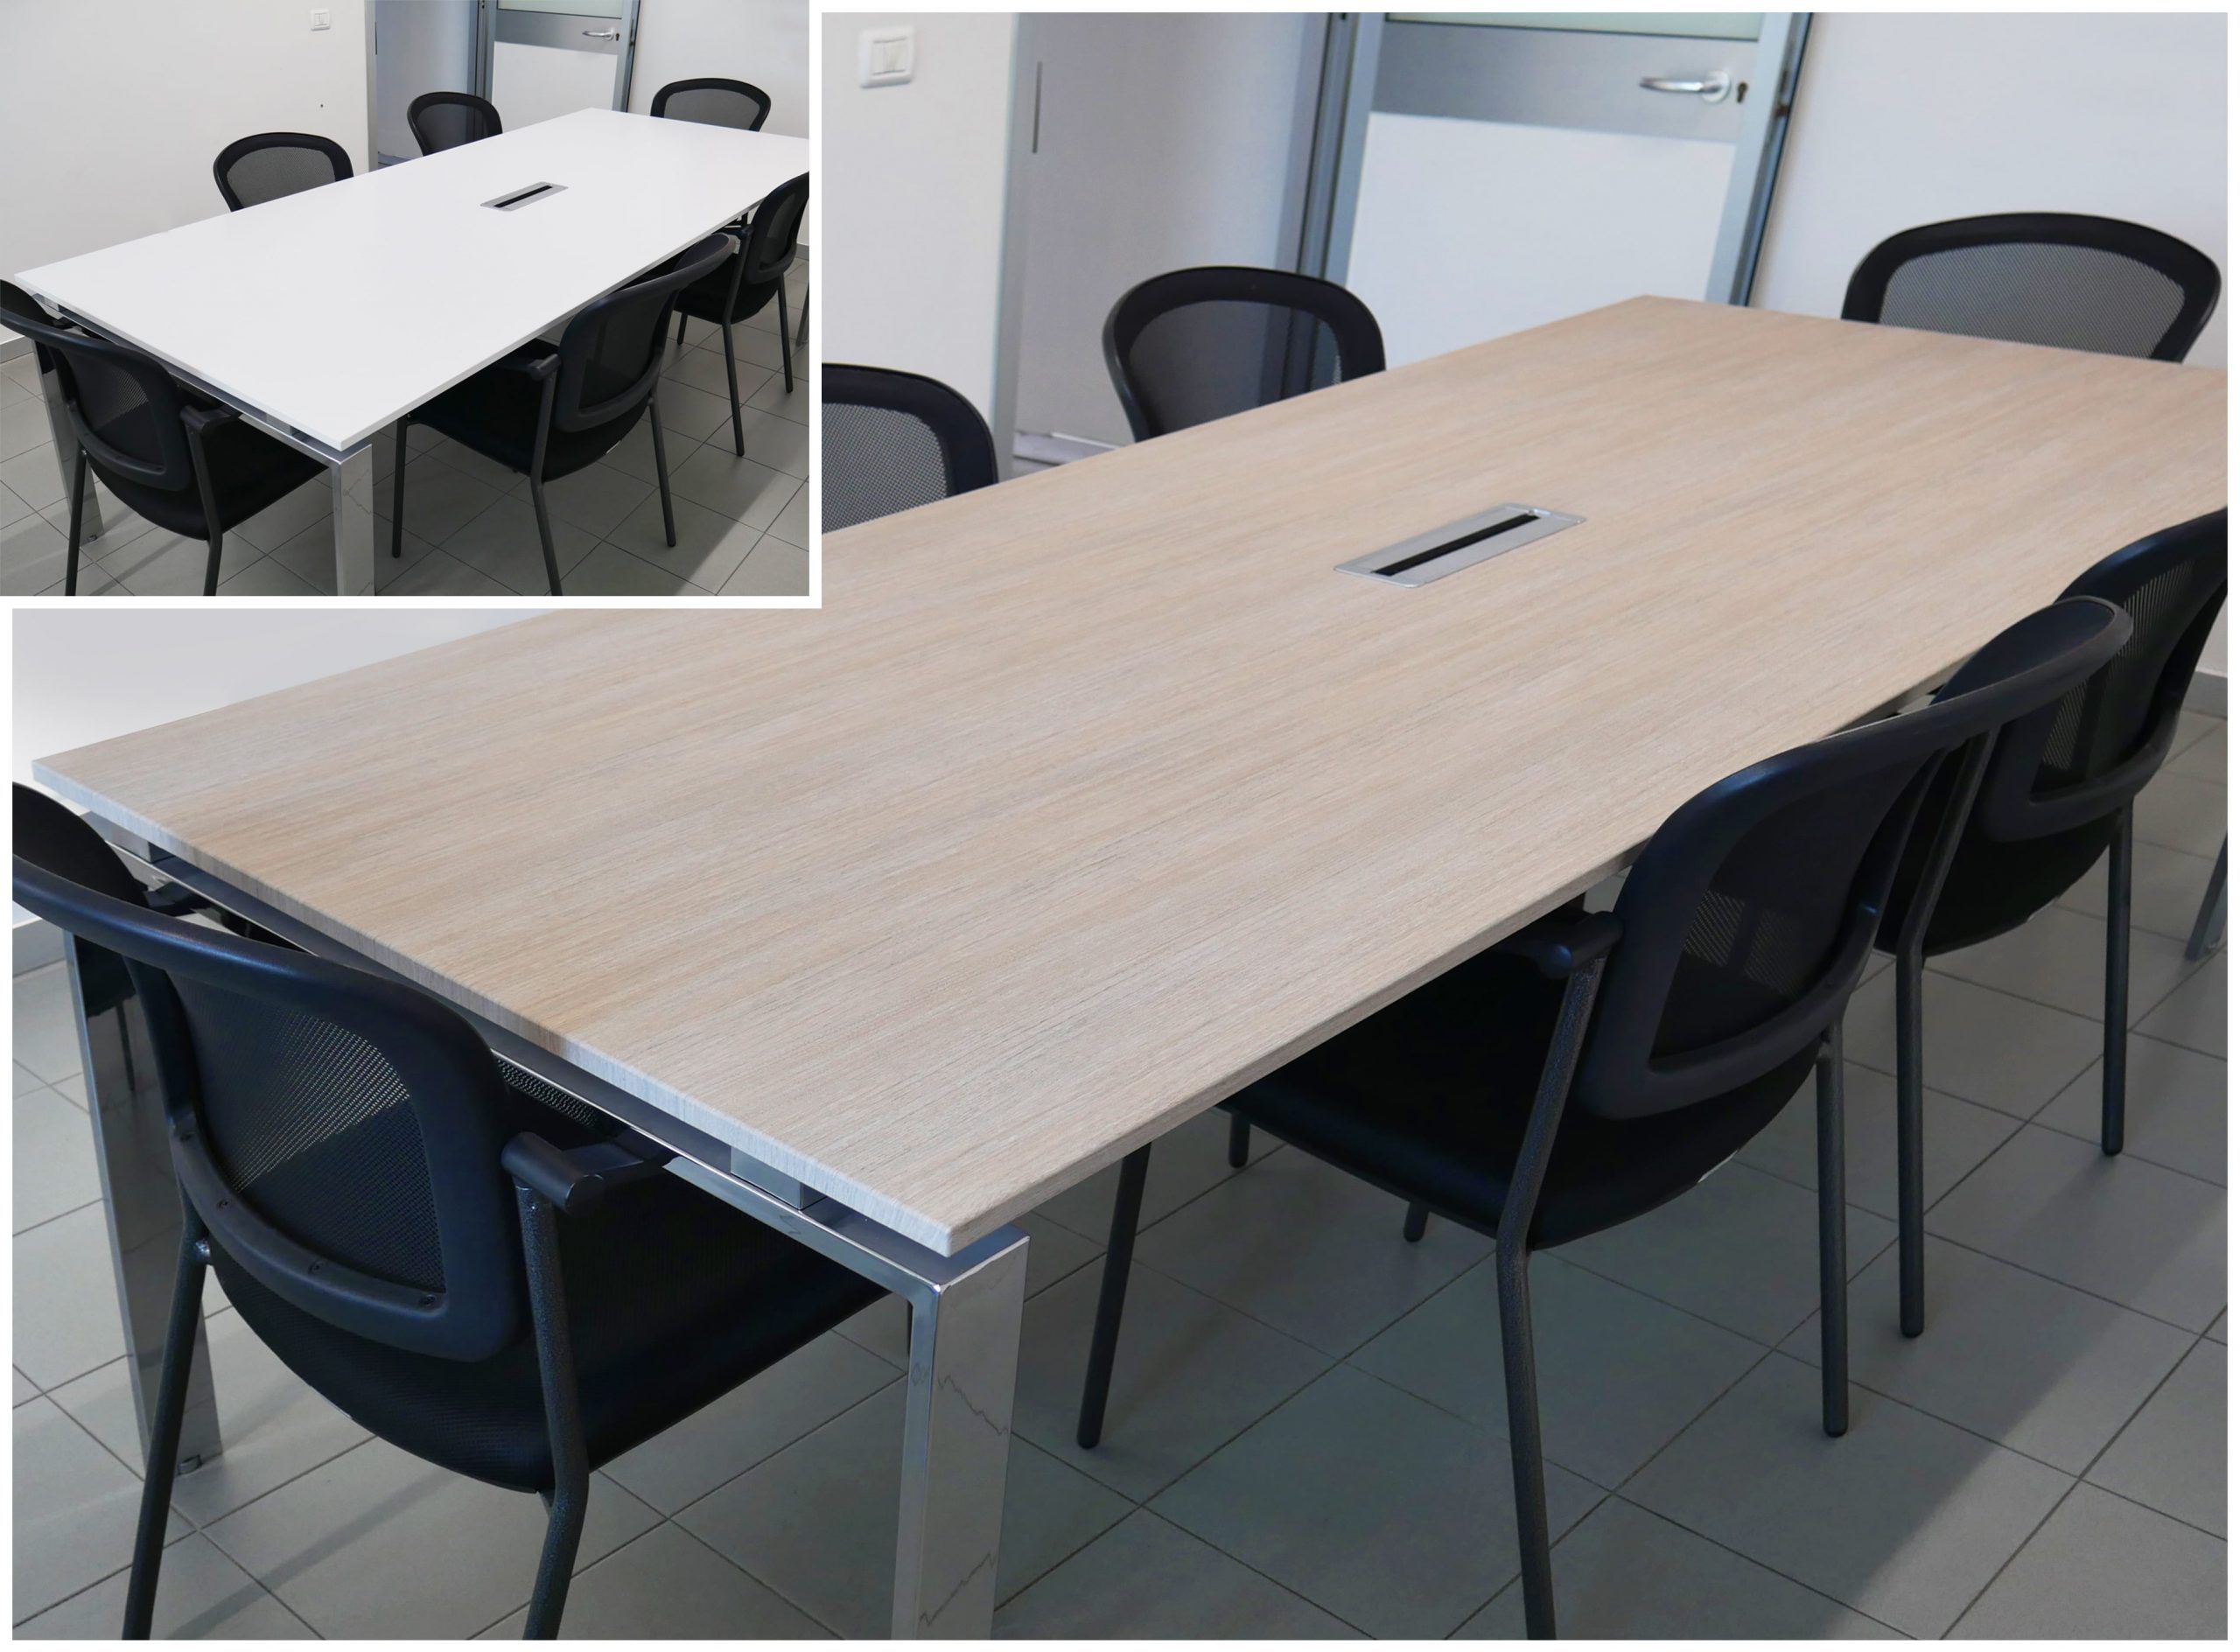 Rivestimento tavolo aziendale con pellicole adesive 3M DI-NOC effetto legno